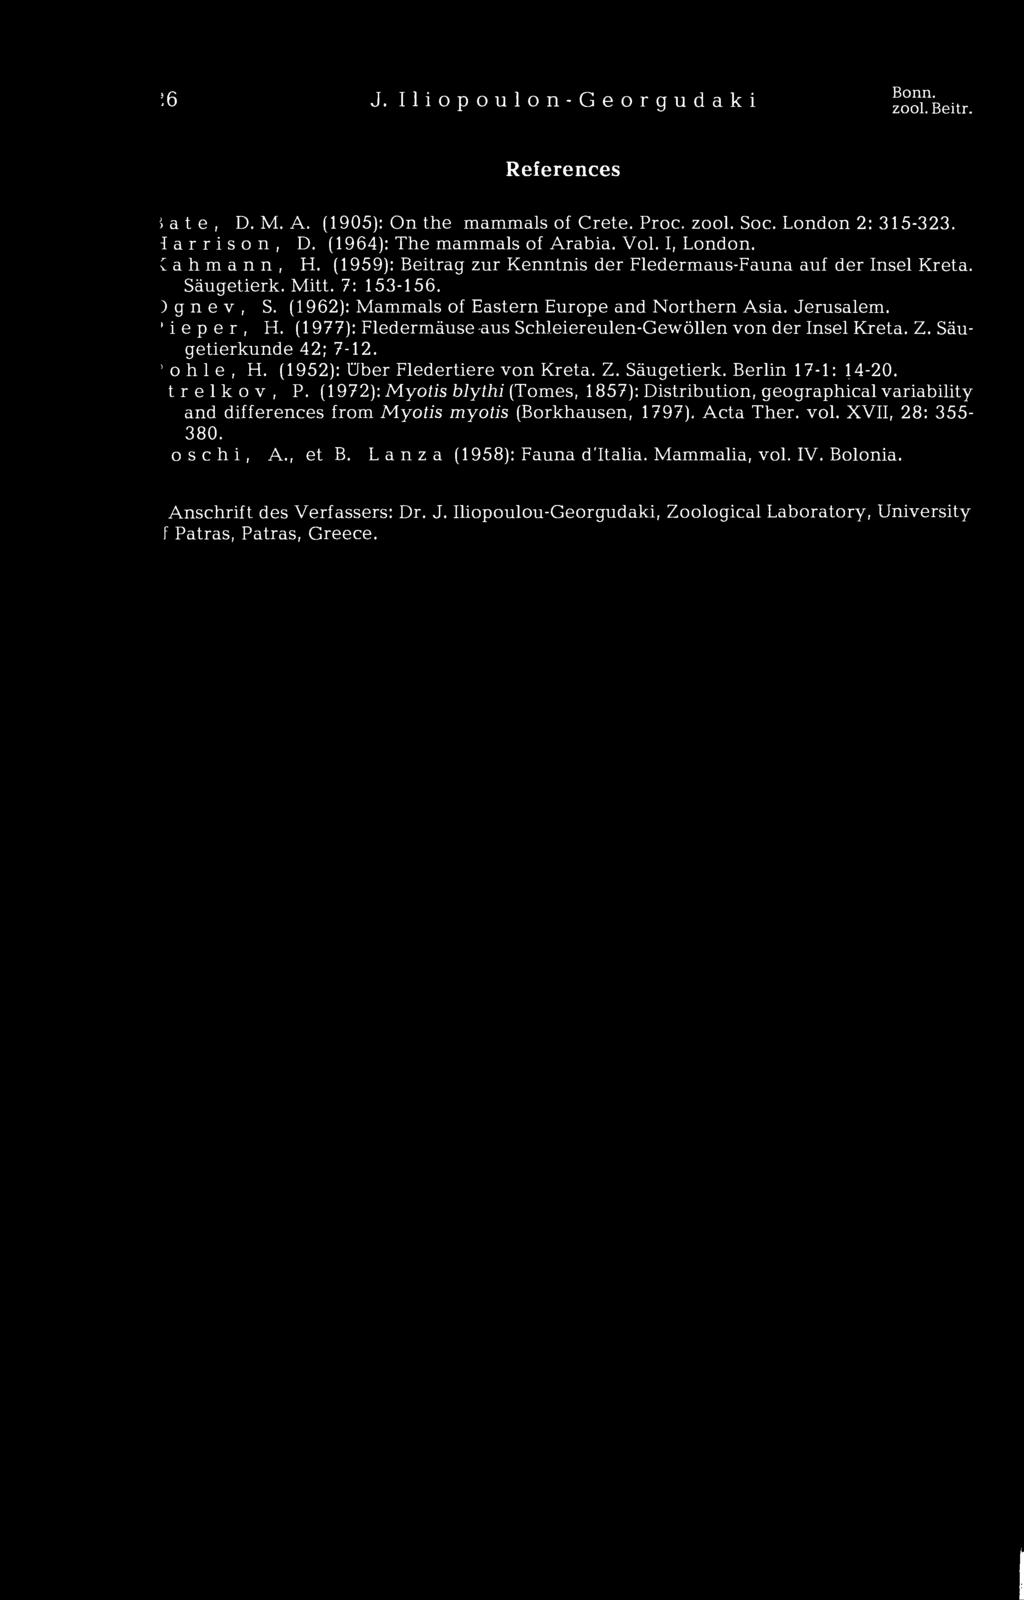 (1959): Beitrag zur Kenntnis der Fledermaus-Fauna auf der Insel Kreta. i e p e r, H. (1977): Fledermäuse aus Schleiereulen-Gewöllen von der Insel Kreta. Z. Säugetierkunde 42; 7-12. ohle, H.